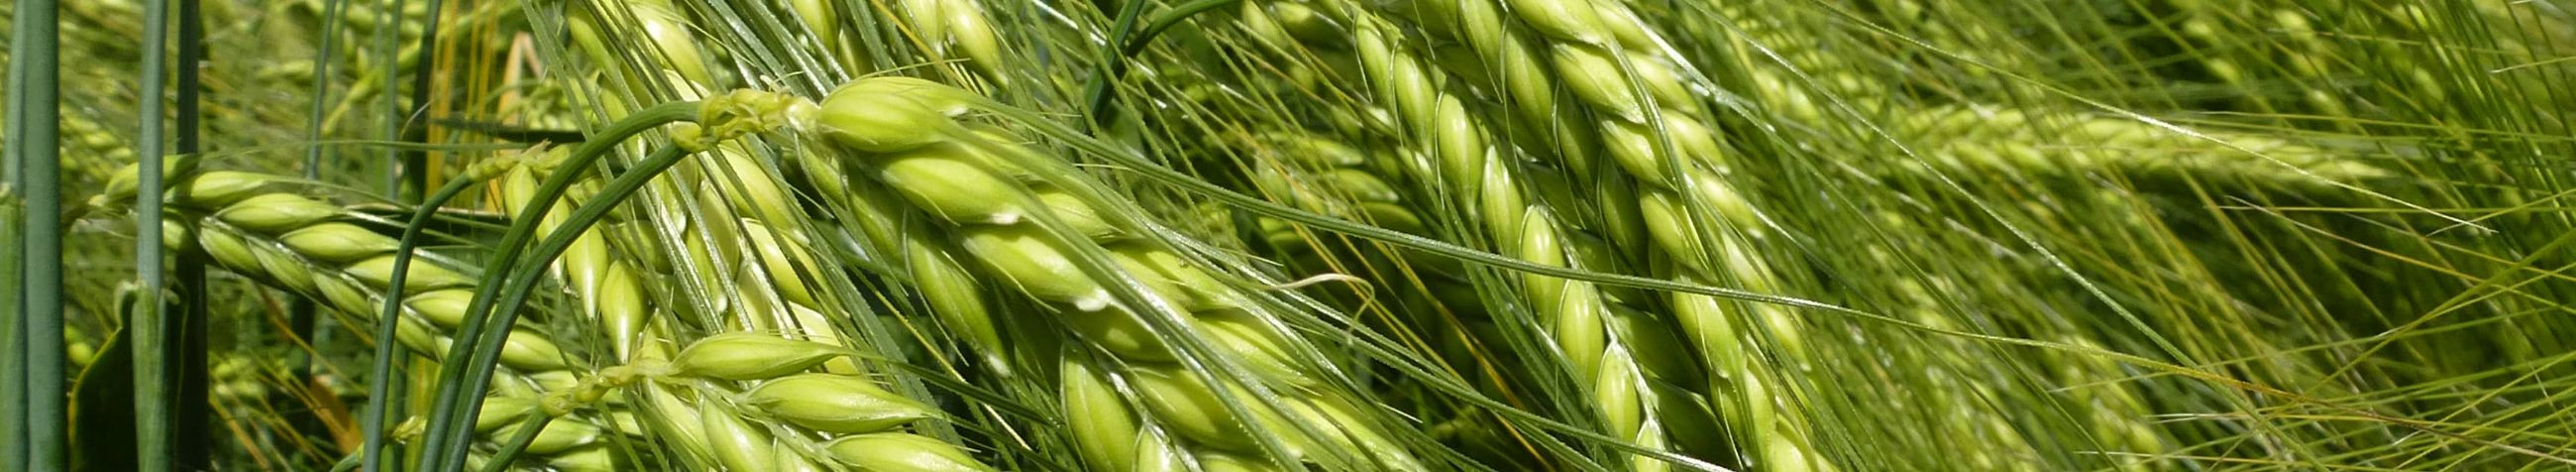 ASAT OÜ on põllumajandusettevõte, mis keskendub kvaliteetsete rapsi-, teravilja- ja liblikõieliste seemnete esindamisele, paljundamisele ja müügile, pakkudes kvaliteetseid seemnesorte.